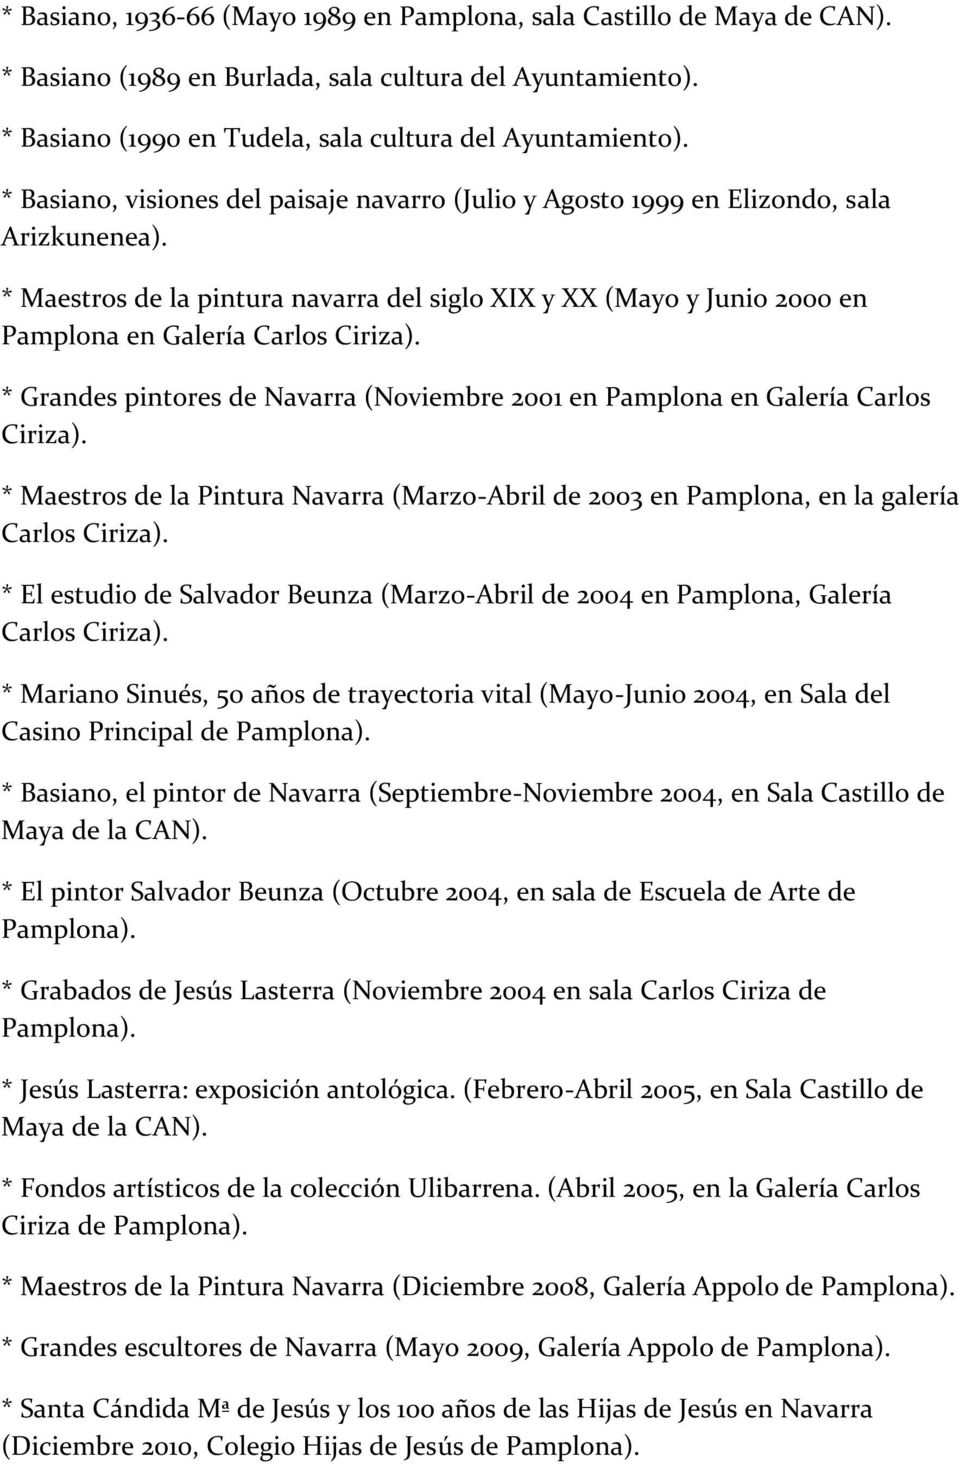 * Maestros de la pintura navarra del siglo XIX y XX (Mayo y Junio 2000 en Pamplona en Galería Carlos Ciriza). * Grandes pintores de Navarra (Noviembre 2001 en Pamplona en Galería Carlos Ciriza).